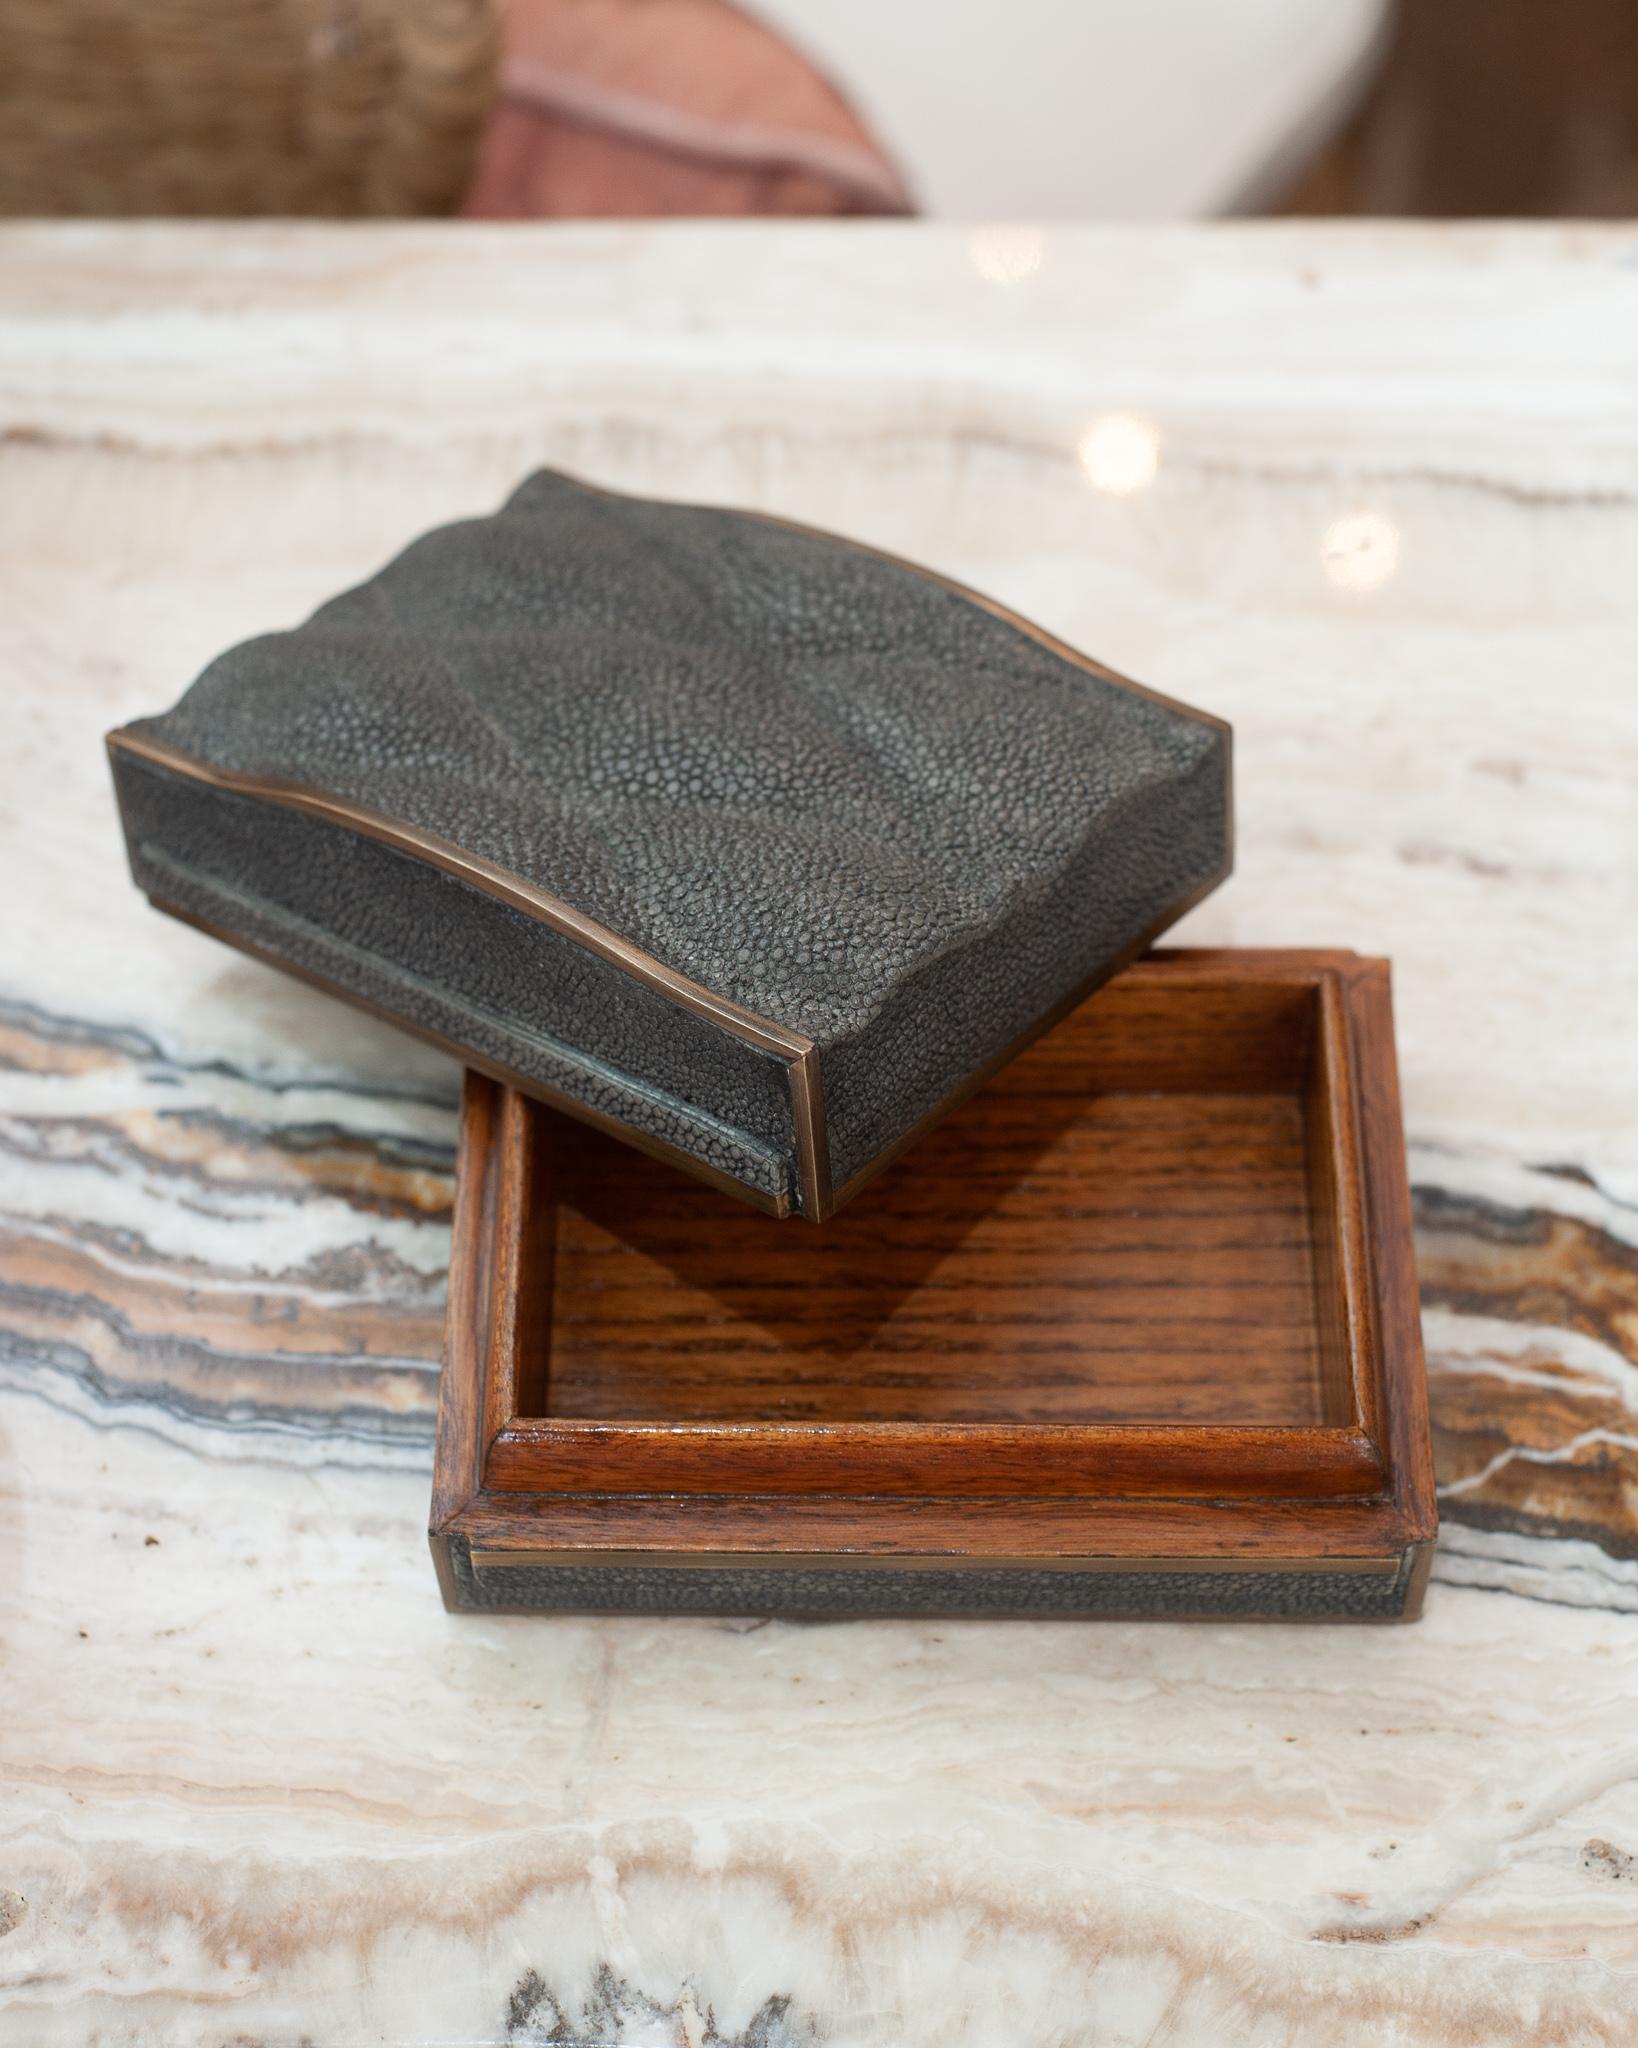 Eine schöne anthrazitfarbene, gesteppte Schachtel von Kifu Paris. Dieses Stück aus natürlicher Haut wird von Meisterhand in höchster Qualität auf einem Sockel aus Walnussholz gefertigt.